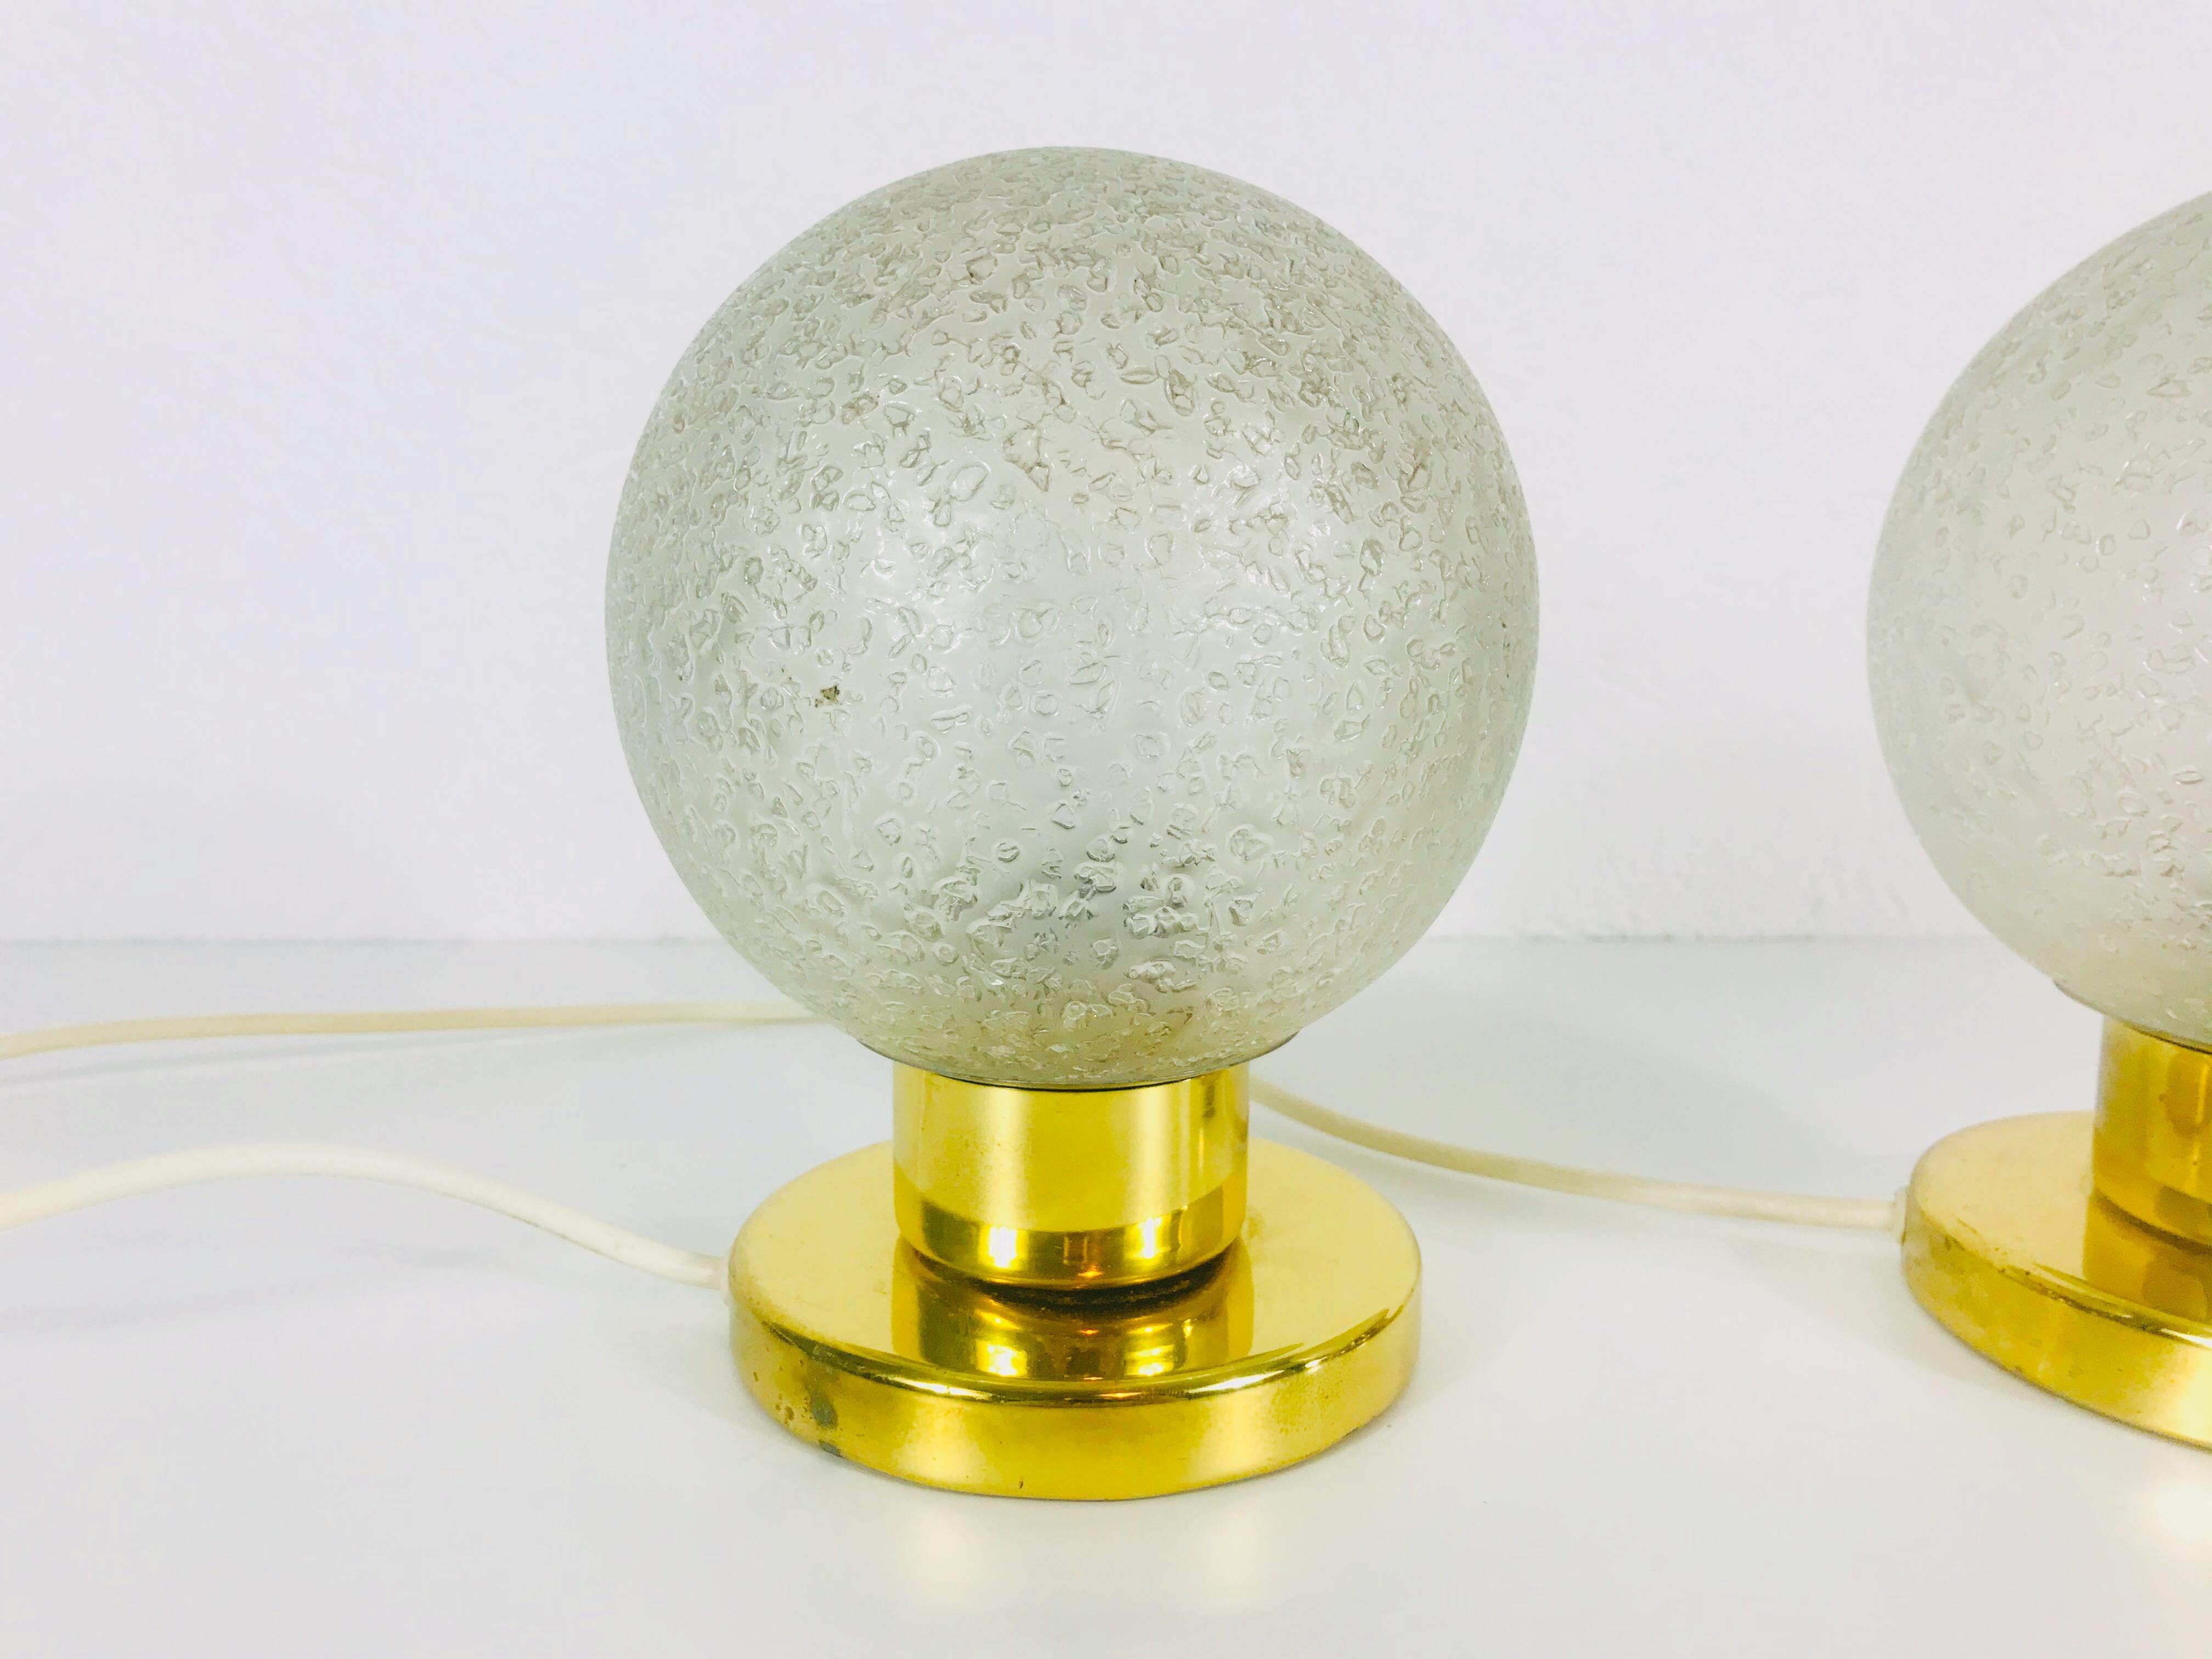 Ein schönes Paar Tischlampen von Doria, hergestellt in Deutschland in den 1970er Jahren. Sie haben einen Sockel aus Messing und die Glasschirme sind aus gefrostetem Eisglas gefertigt. Sie sind in sehr gutem Zustand.

Die Leuchte benötigt eine